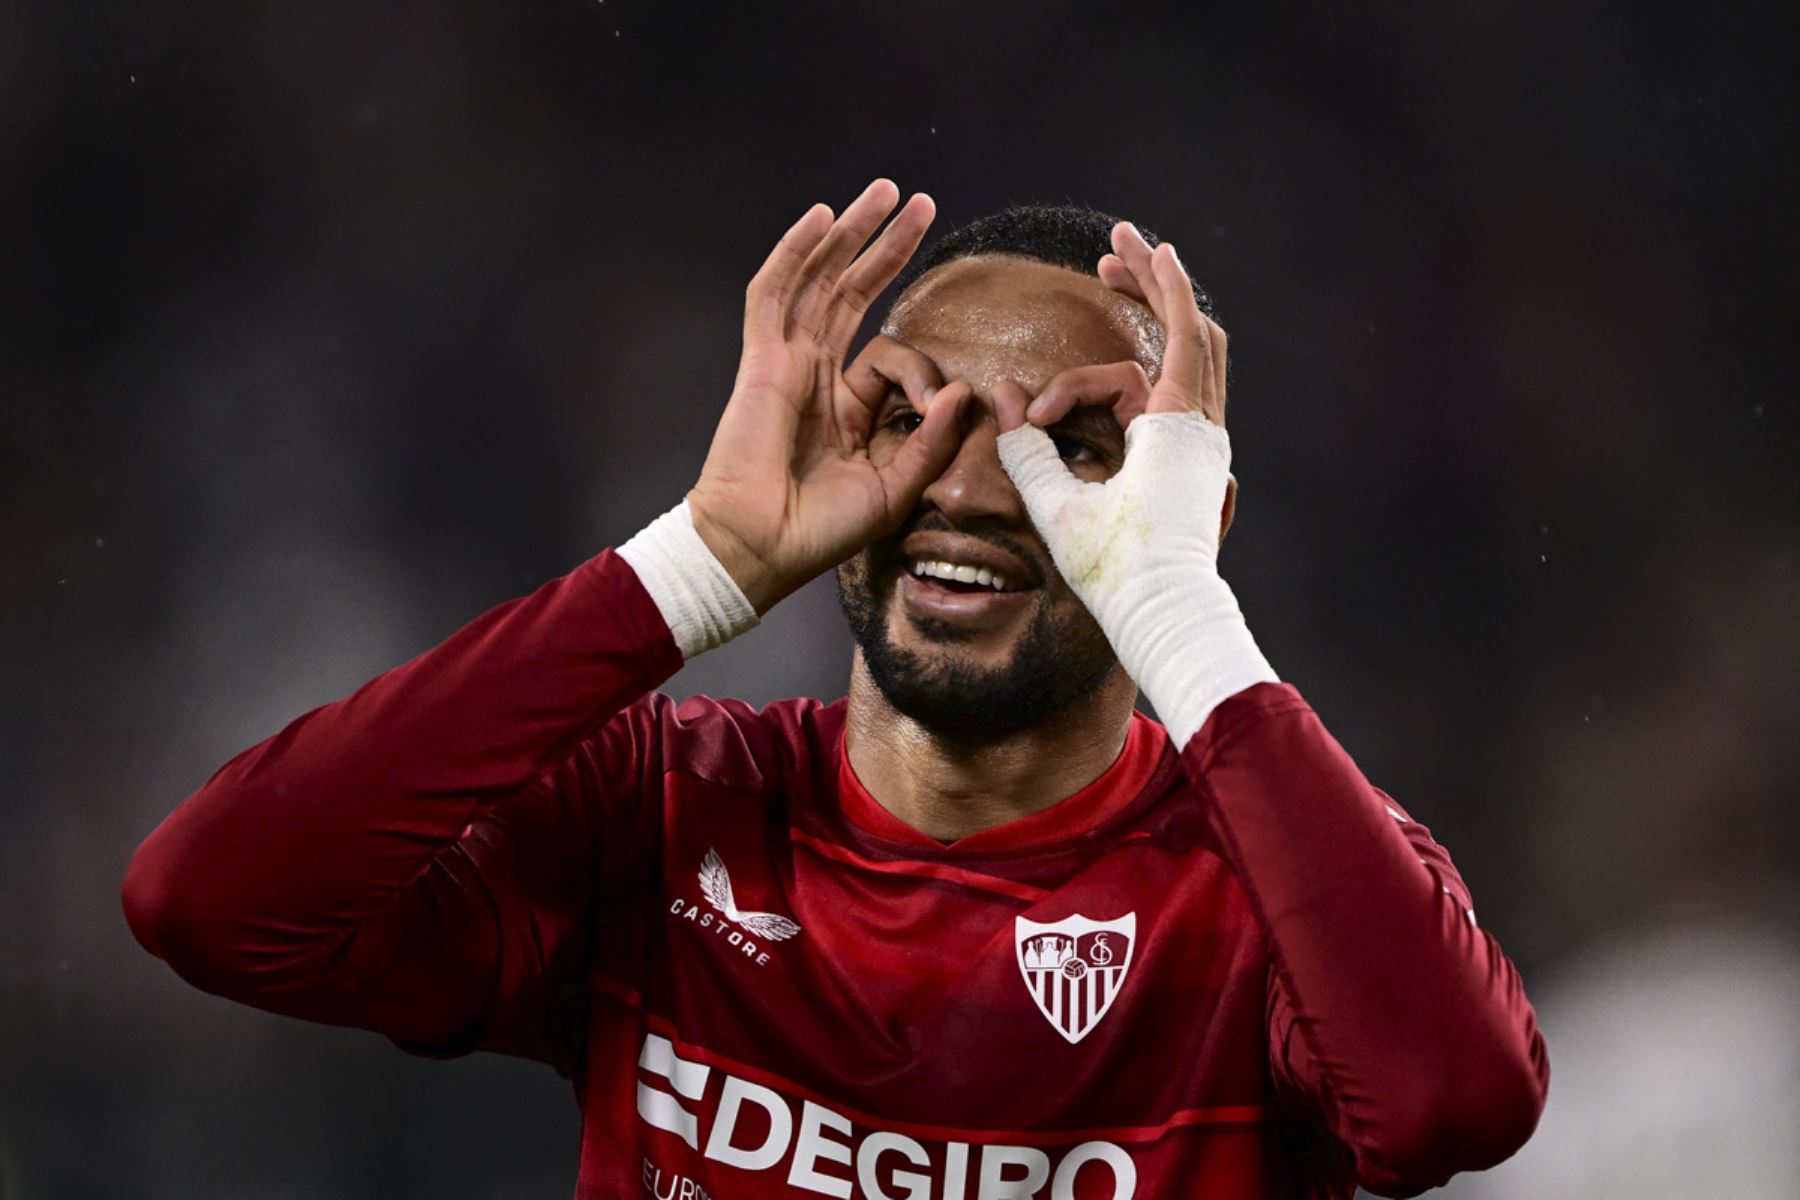 El delantero marroquí del Sevilla, Youssef En-Nesyri, celebra después de abrir el marcador durante el partido de ida de la semifinal de la UEFA Europa League entre Juventus y Sevilla

Foto: AFP